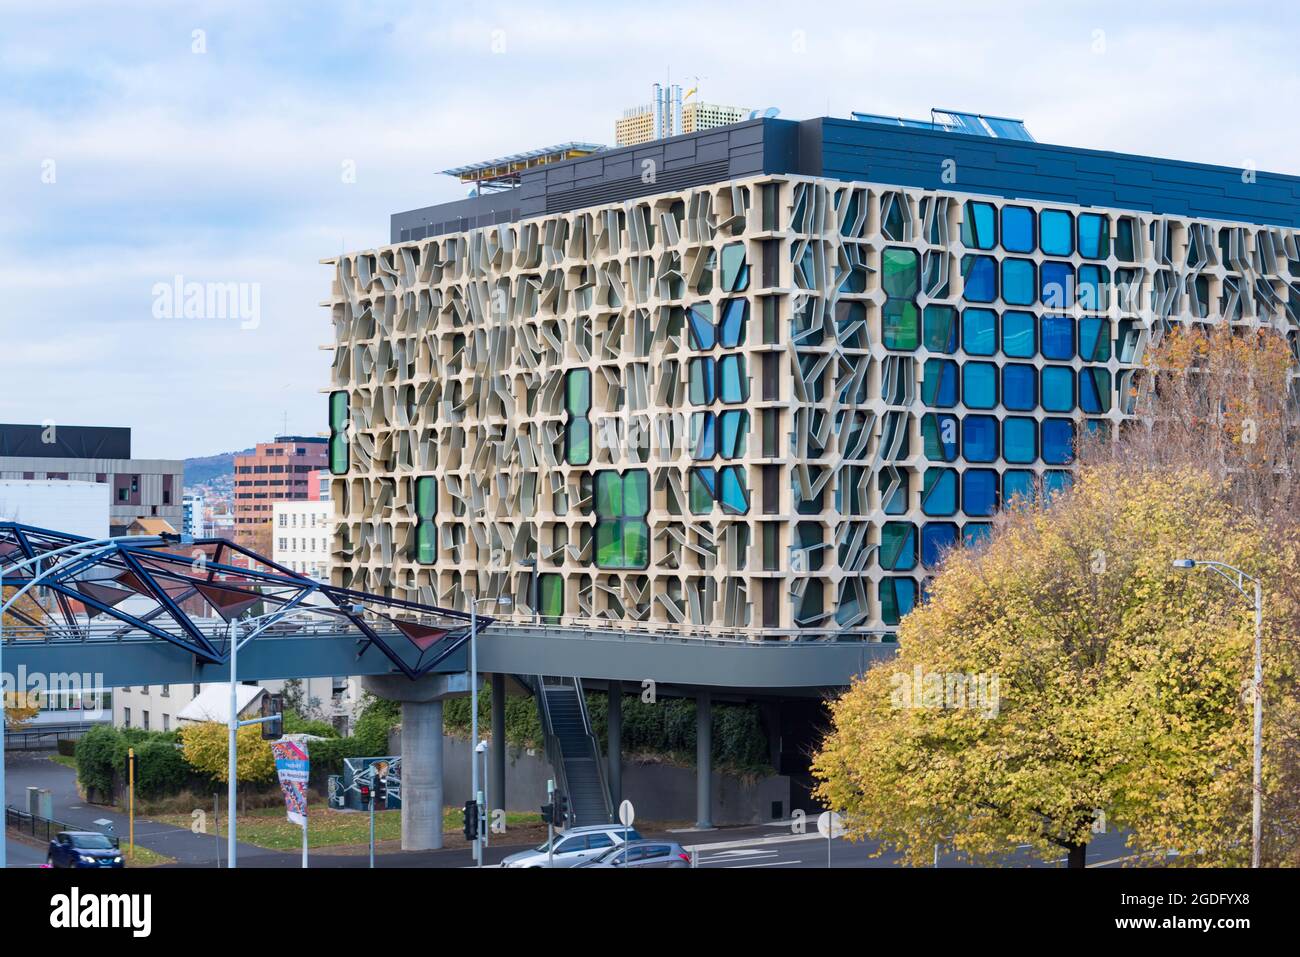 Le bâtiment de l'Université de Tasmanie Medical Science 2 (MS2) est situé à côté du Menzies Institute for Medical Research à Hobart, en Tasmanie, en Australie Banque D'Images